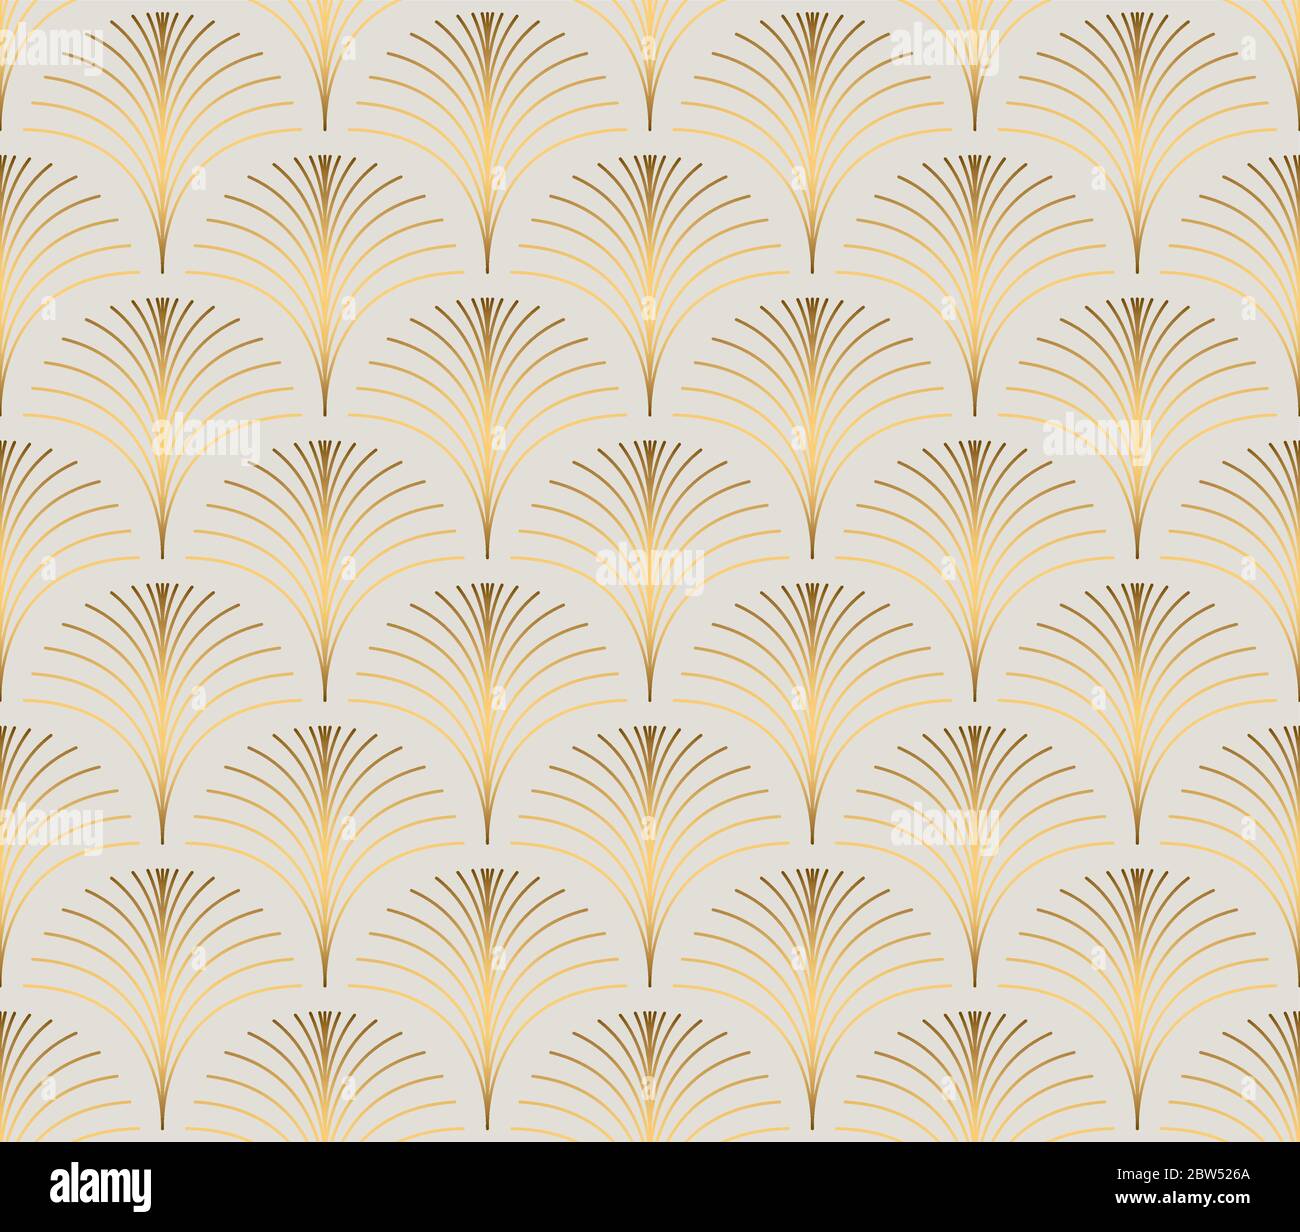 Vintage-Stil elegante florale Art Deco wiederholen Fan-Muster / stilisierte Palme Blatt in golden metallischen Verlauf auf hellem Hintergrund. Nahtlose Art-Deco-Einrichtung Stock Vektor